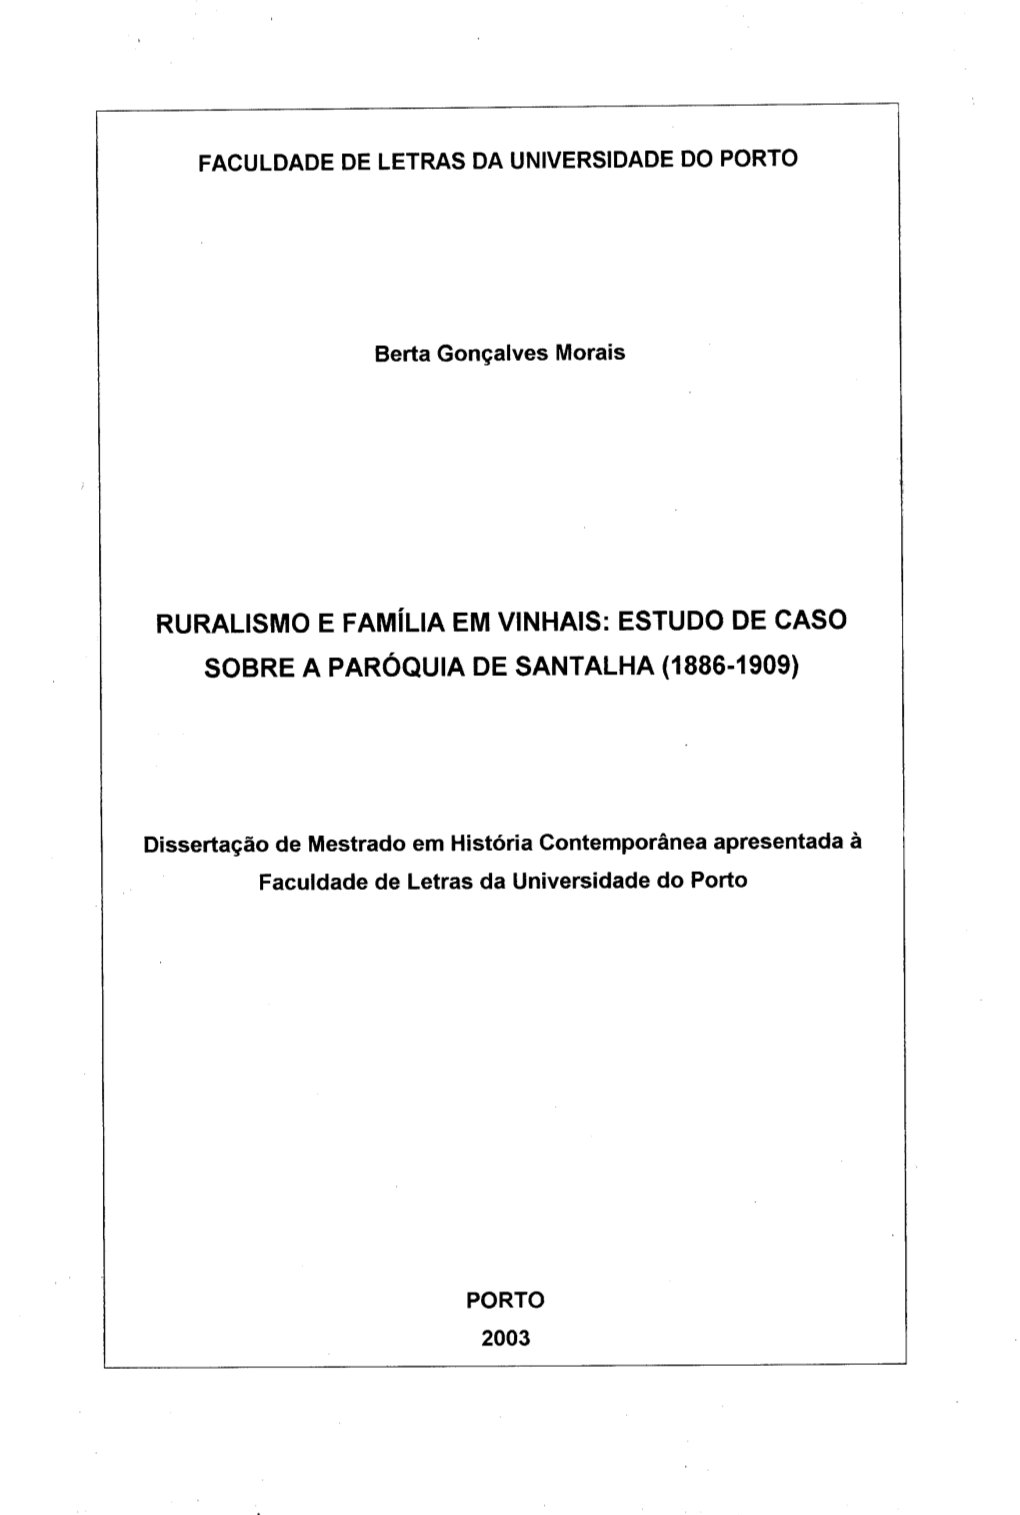 Ruralismo E Família Em Vinhais: Estudo De Caso Sobre a Paróquia De Santalha (1886-1909)